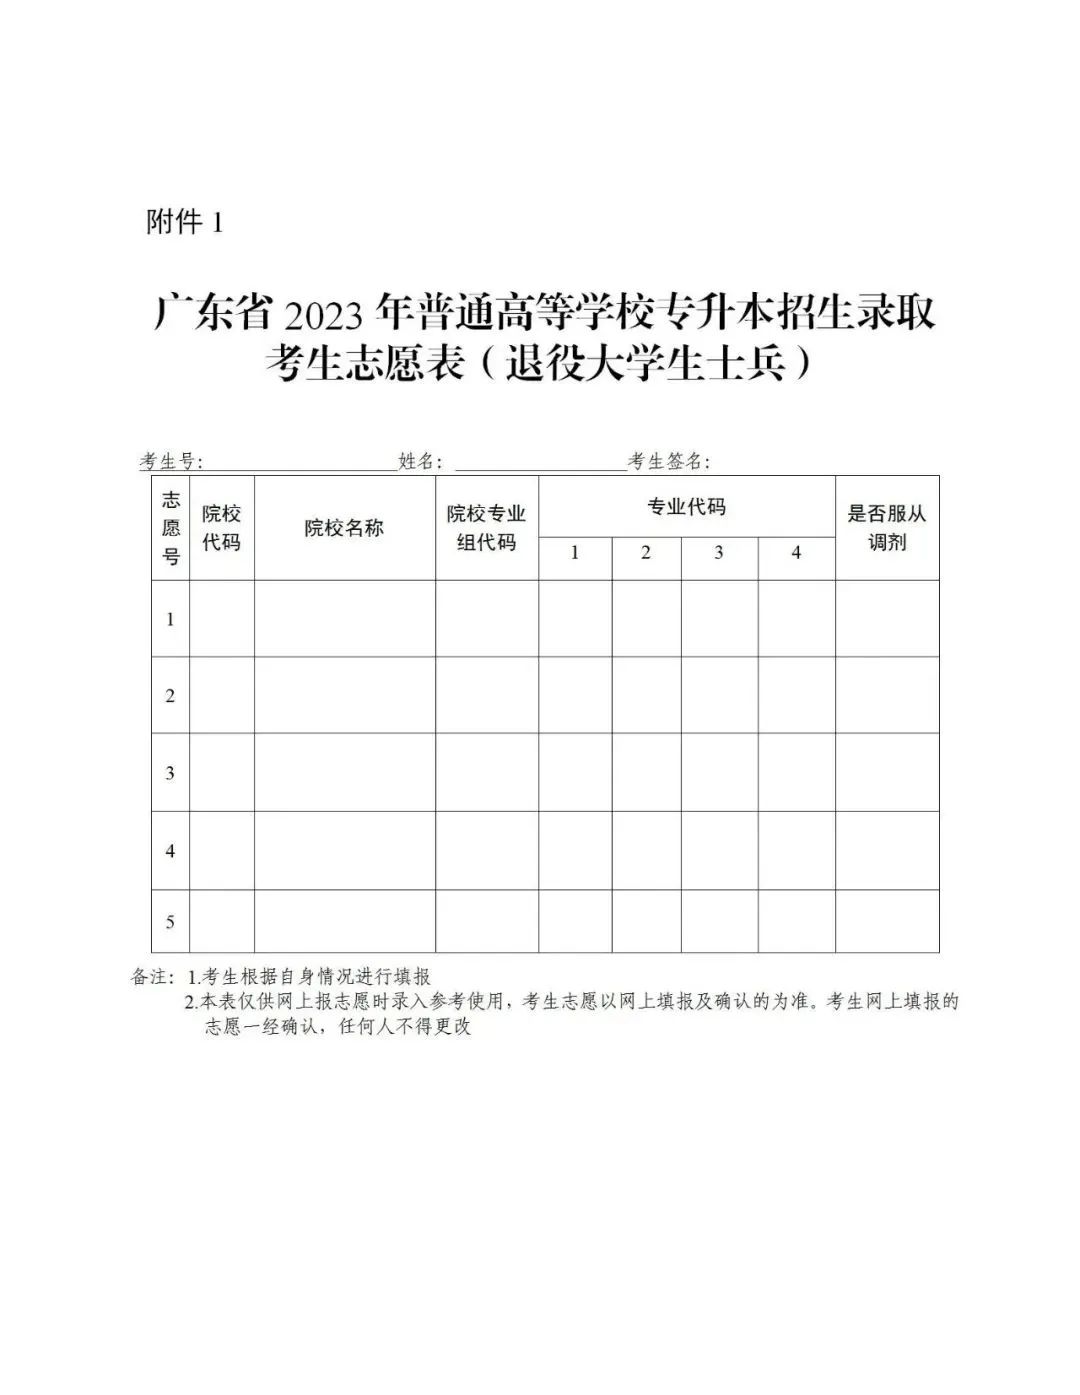 2023年广东专升本考试招生志愿填报